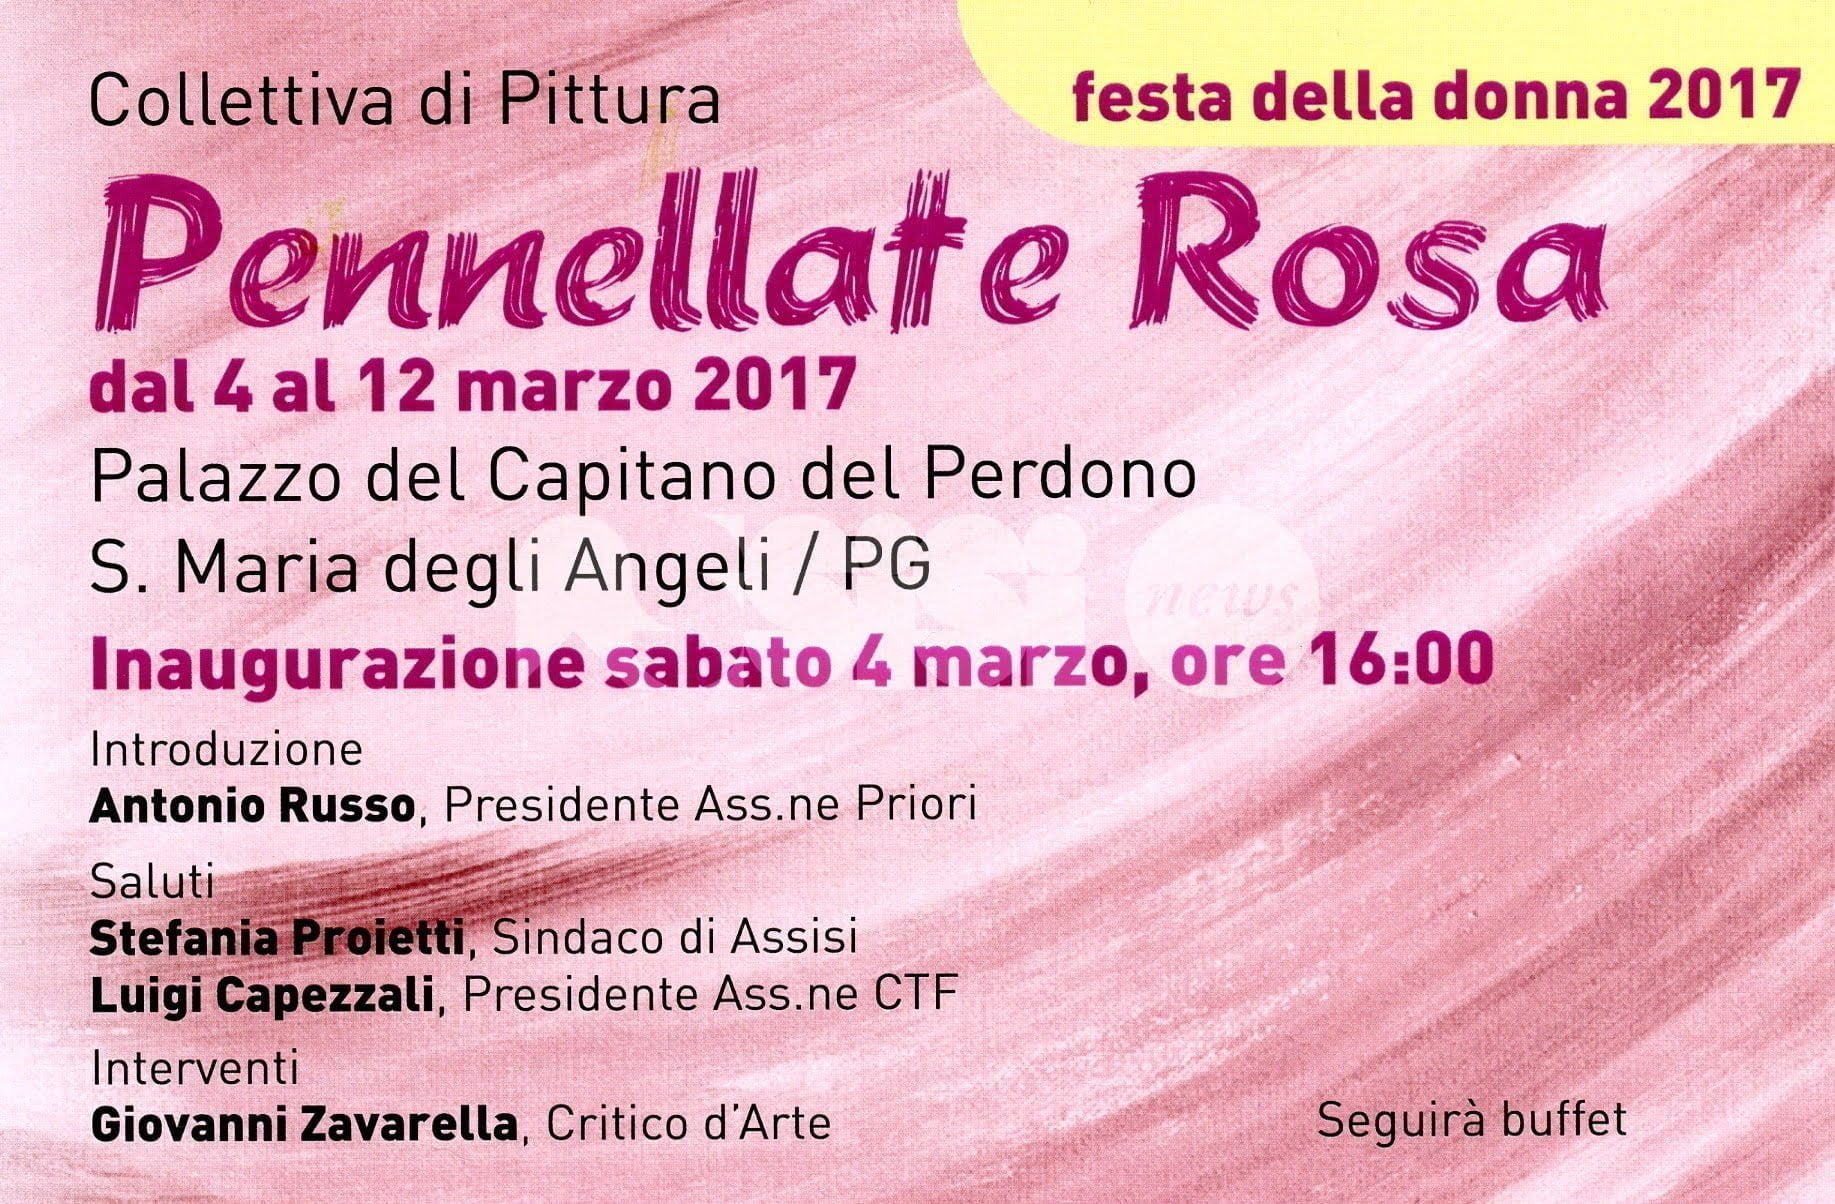 La mostra "Pennellate Rosa" dal 4 al 12 marzo al Palazzo del Capitano del Perdono